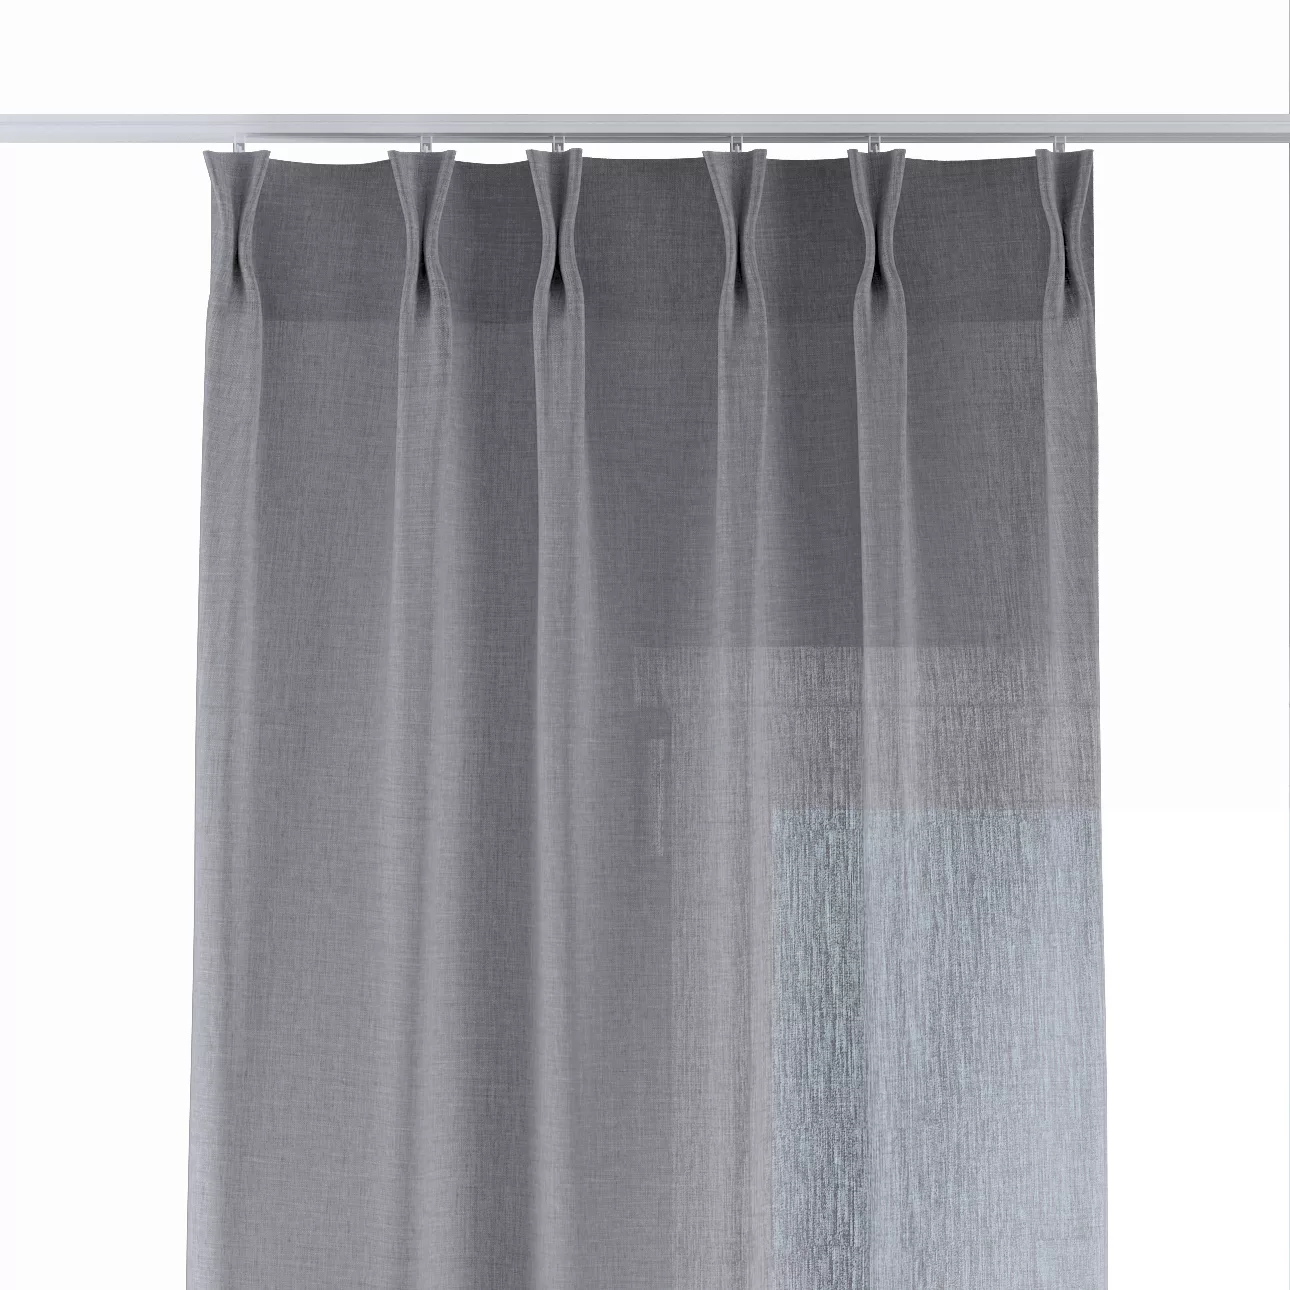 Vorhang mit flämischen 2-er Falten, grau, Delicate Premium (144-52) günstig online kaufen